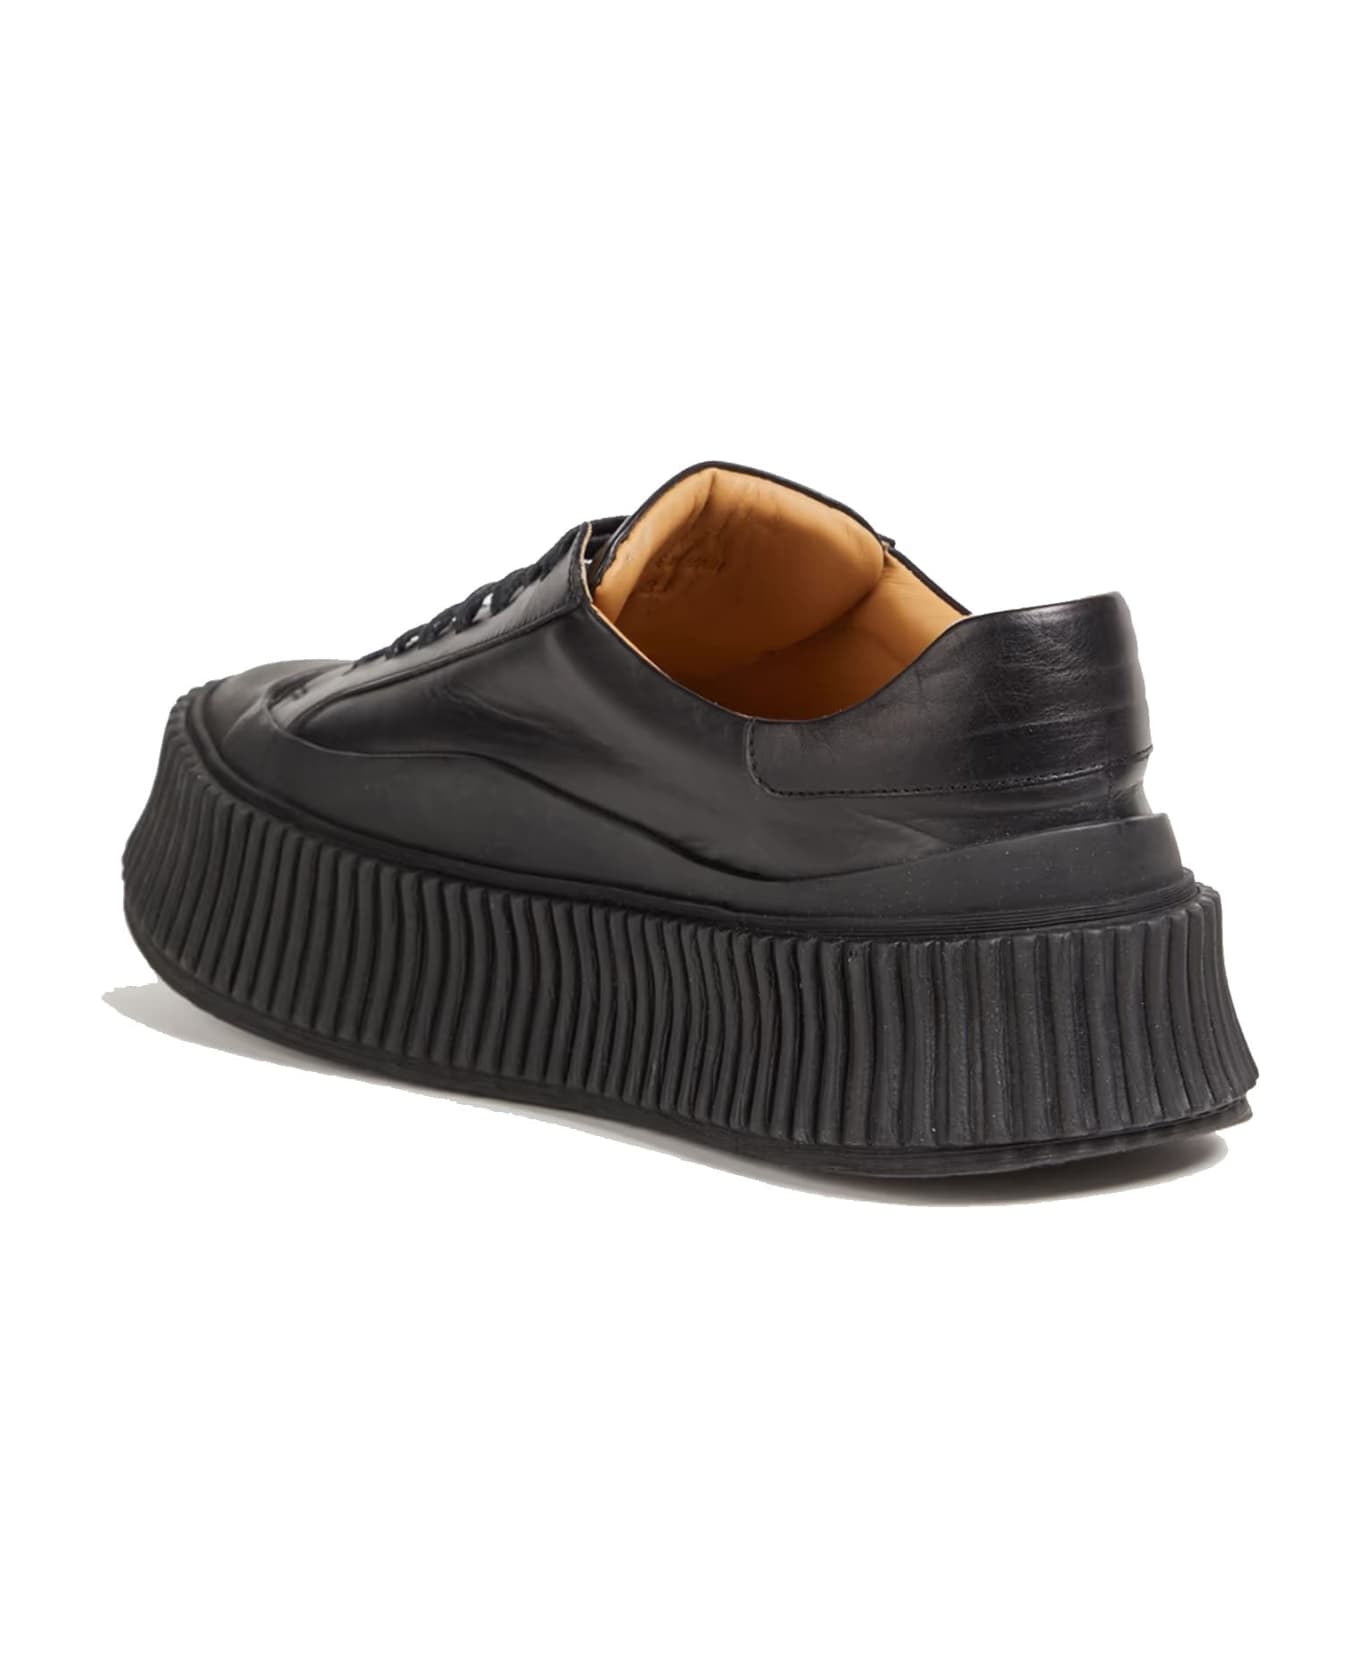 Jil Sander Leather Sneakers - Black スニーカー